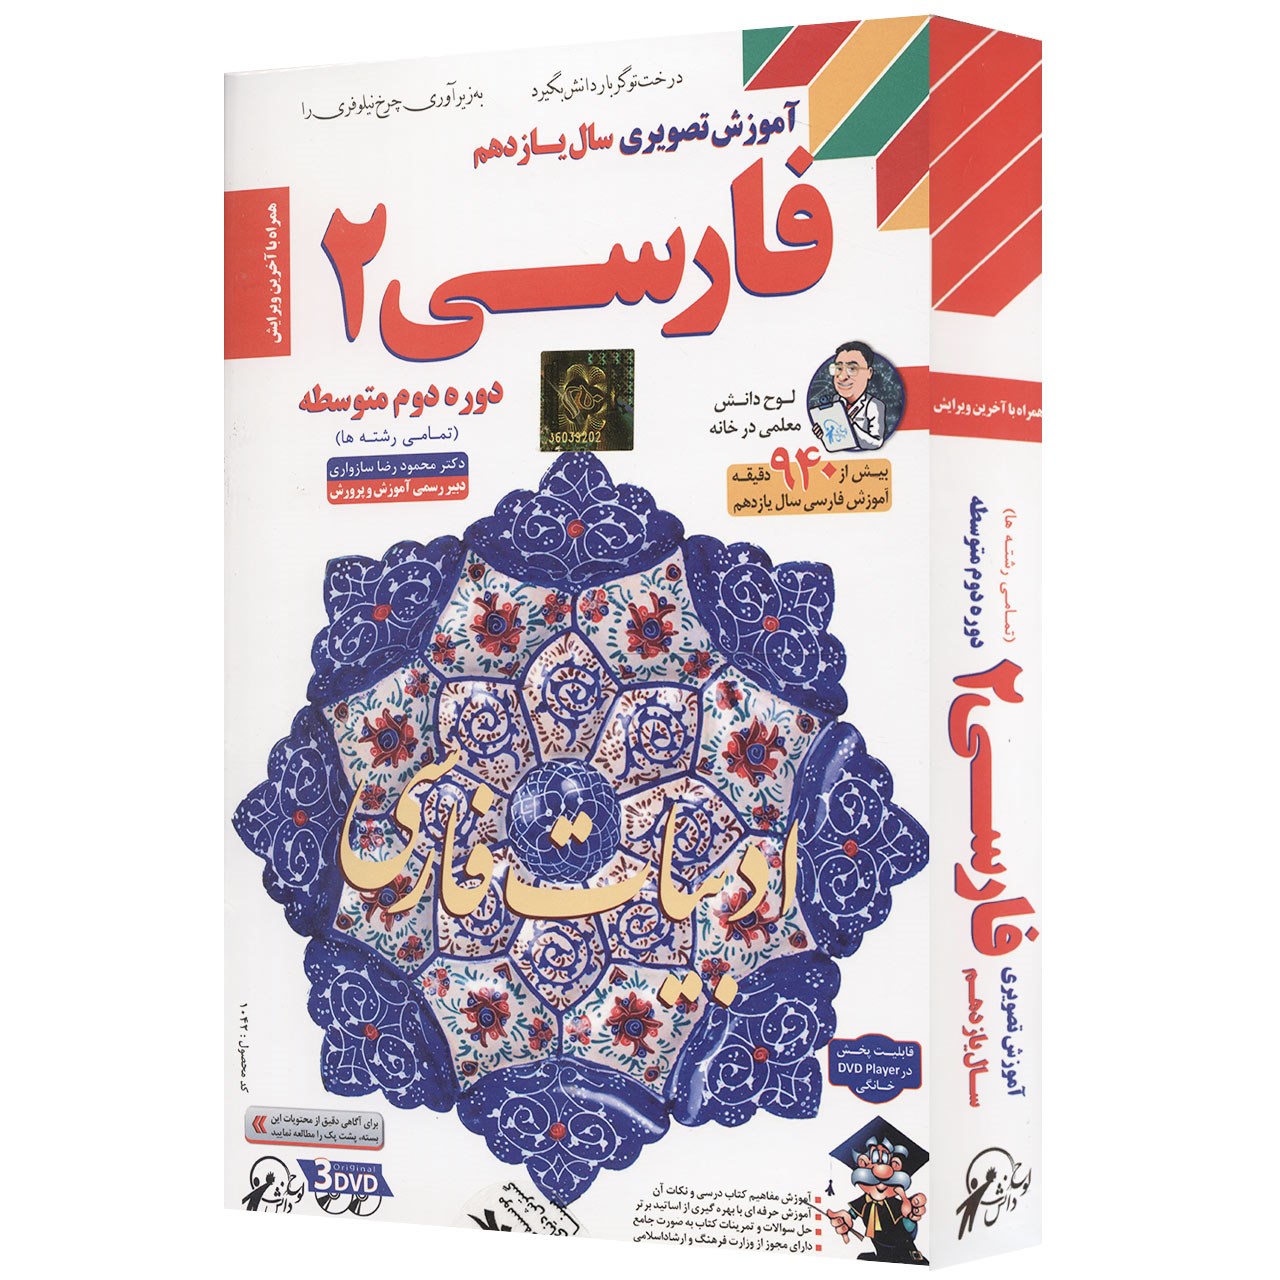 آموزش تصویری فارسی 2 نشر لوح دانش - تمامی رشته ها